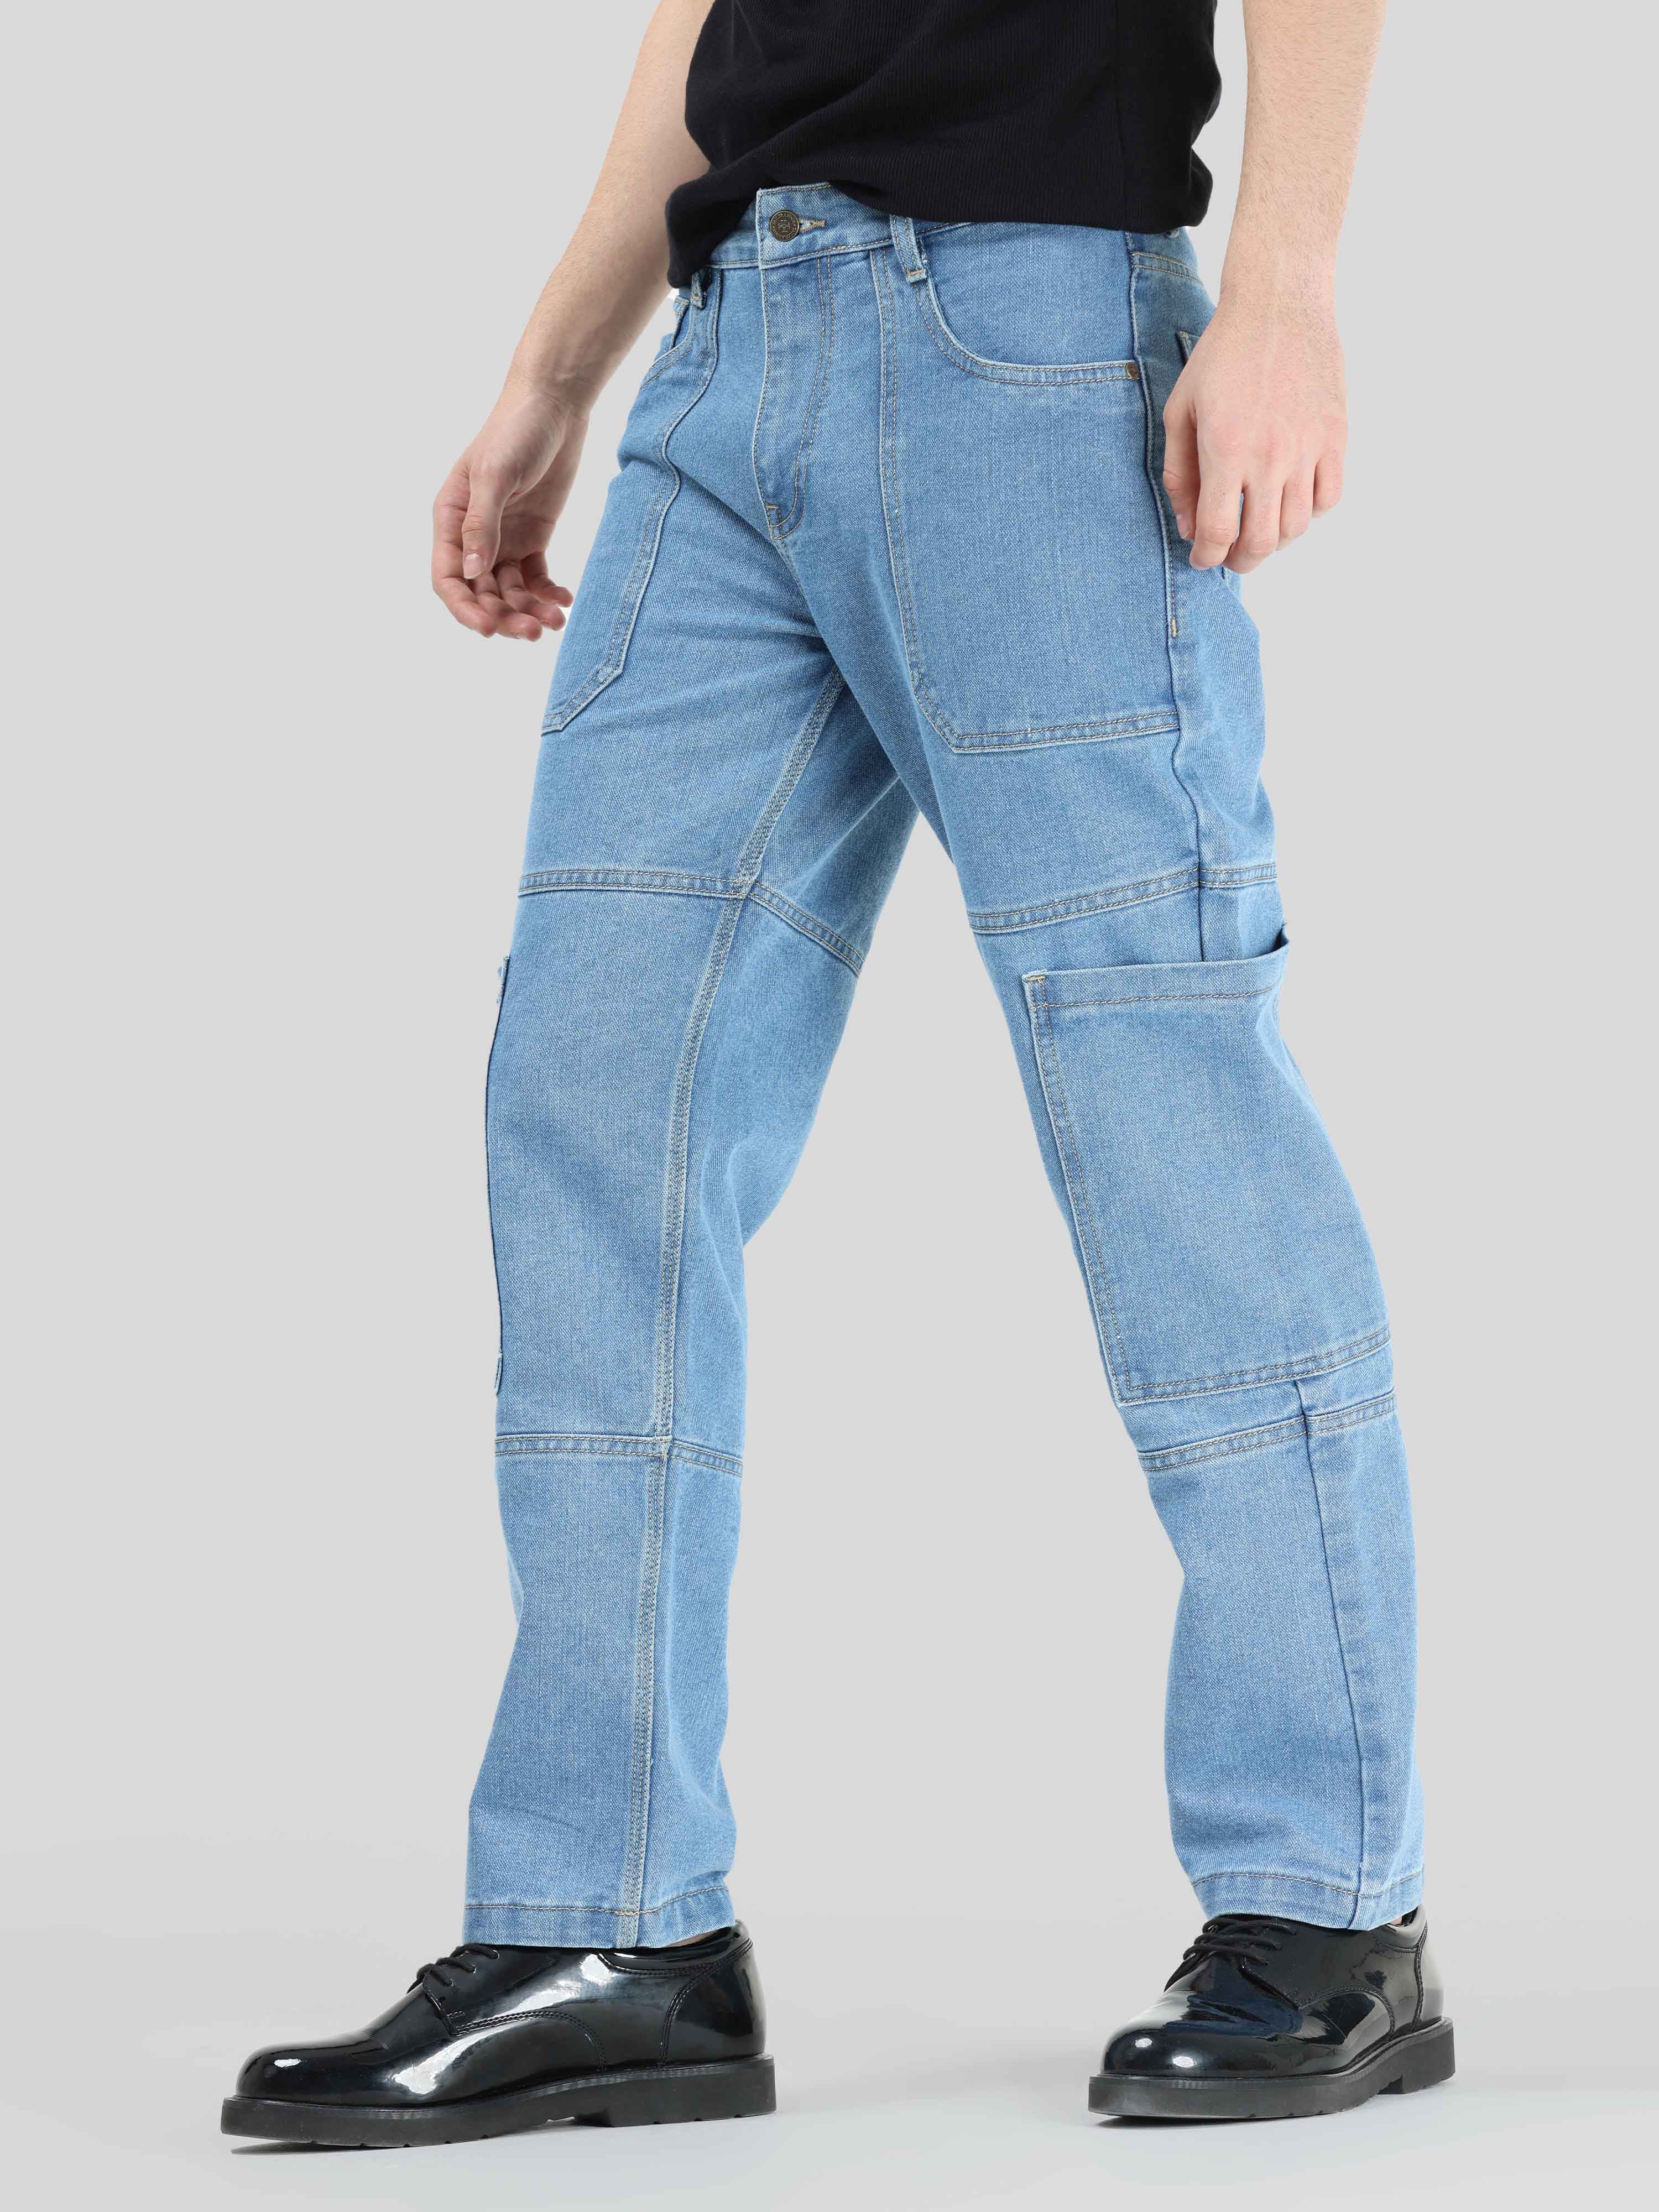 Buy Latest Hippe Light Blue Cargo Denim Jeans Mens Online